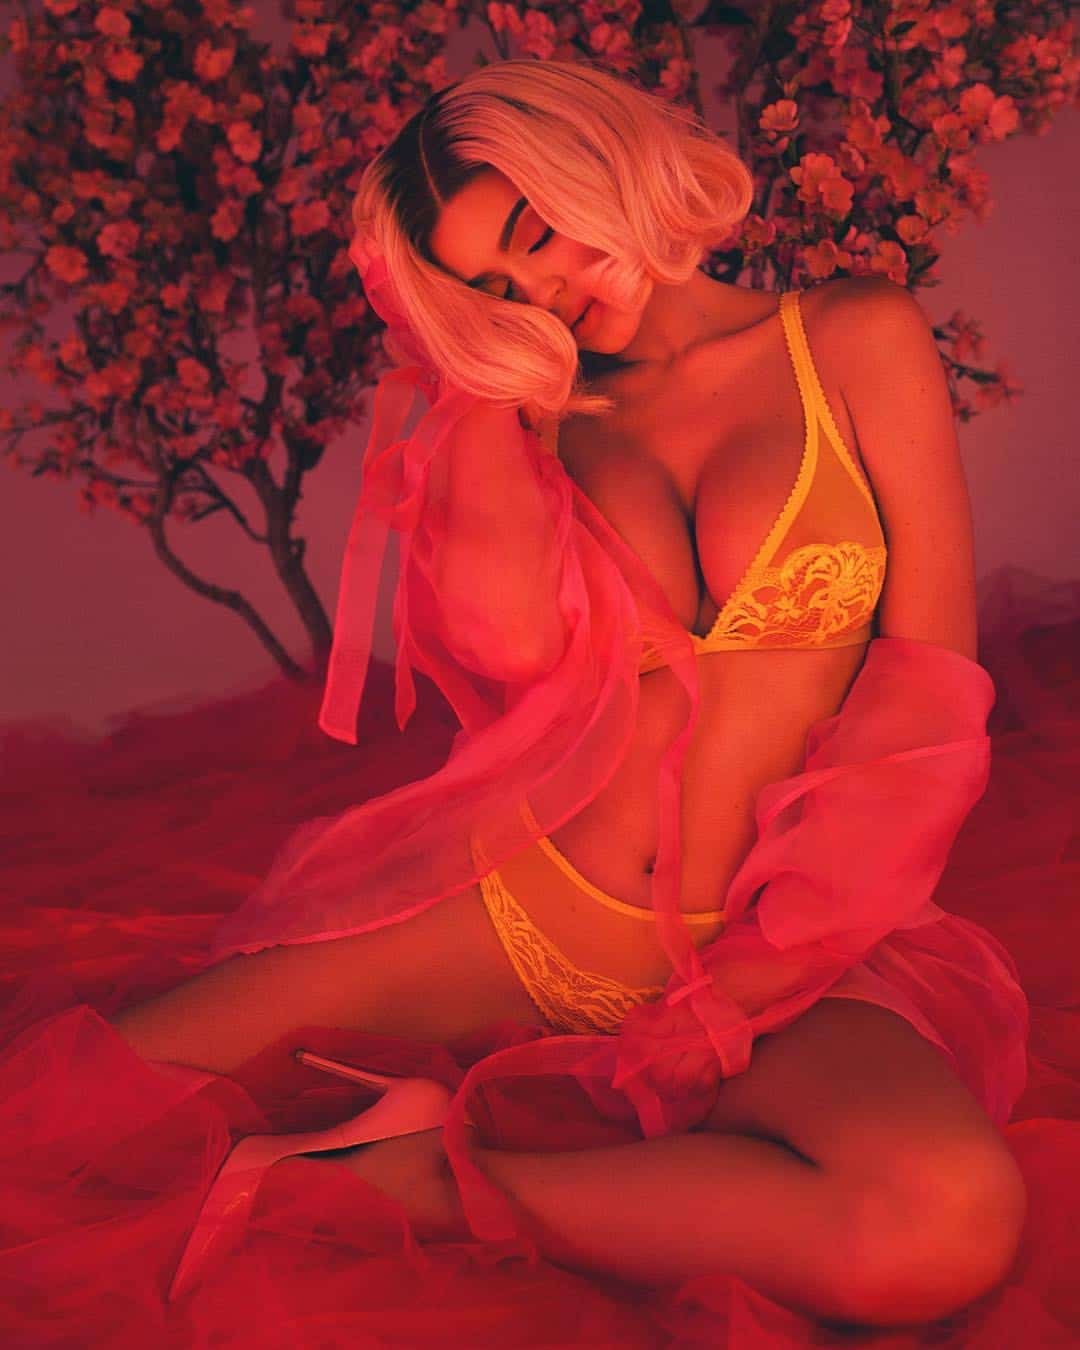 kylie jenner sexy 19 nudevn.com Kylie Jenner nude